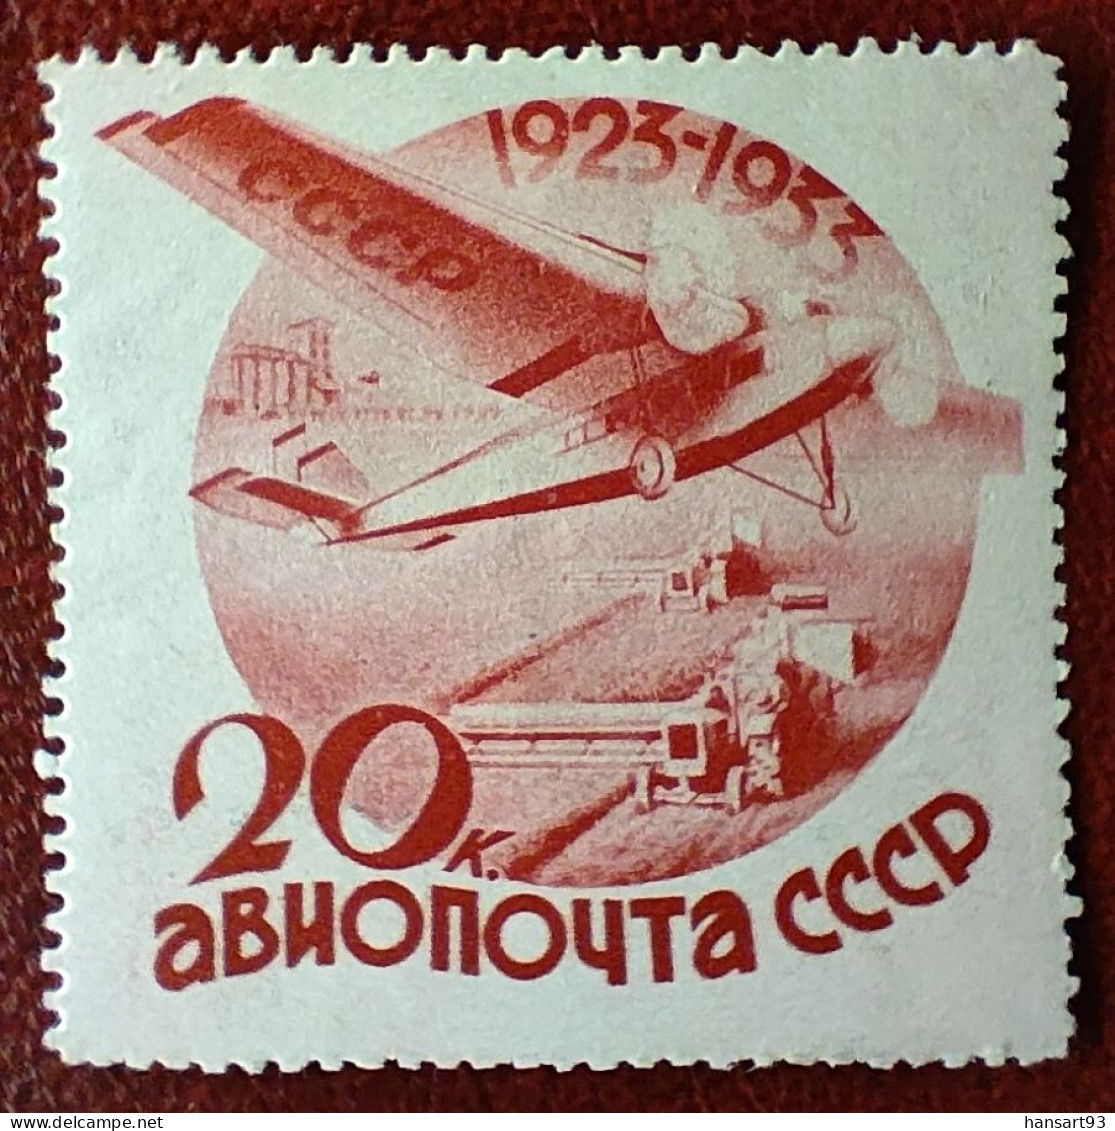 URSS Rare Poste Aérienne N° 43 N* TTB Avec Un Petit Pli Horizontal ! Cote 2020 : 50,00 Euros ! A Voir Absolument !! - Neufs